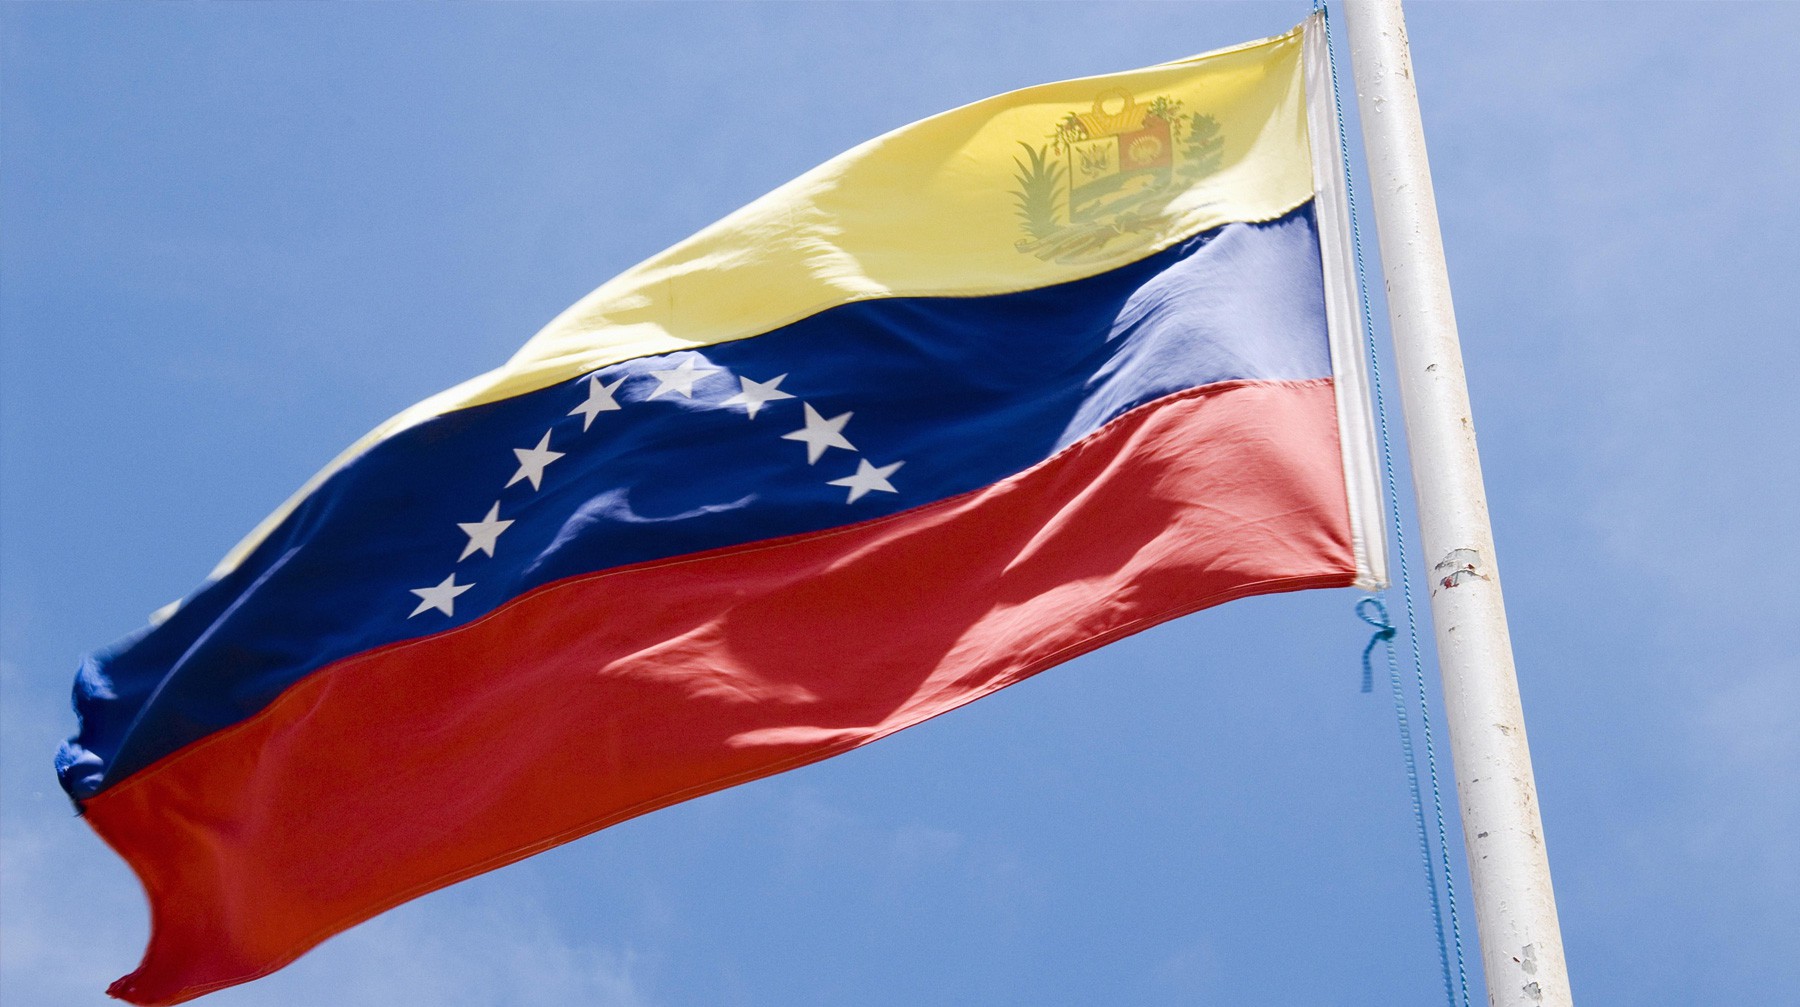 Dailystorm - Мадуро дал 72 часа дипломатам США, чтобы они покинули Венесуэлу